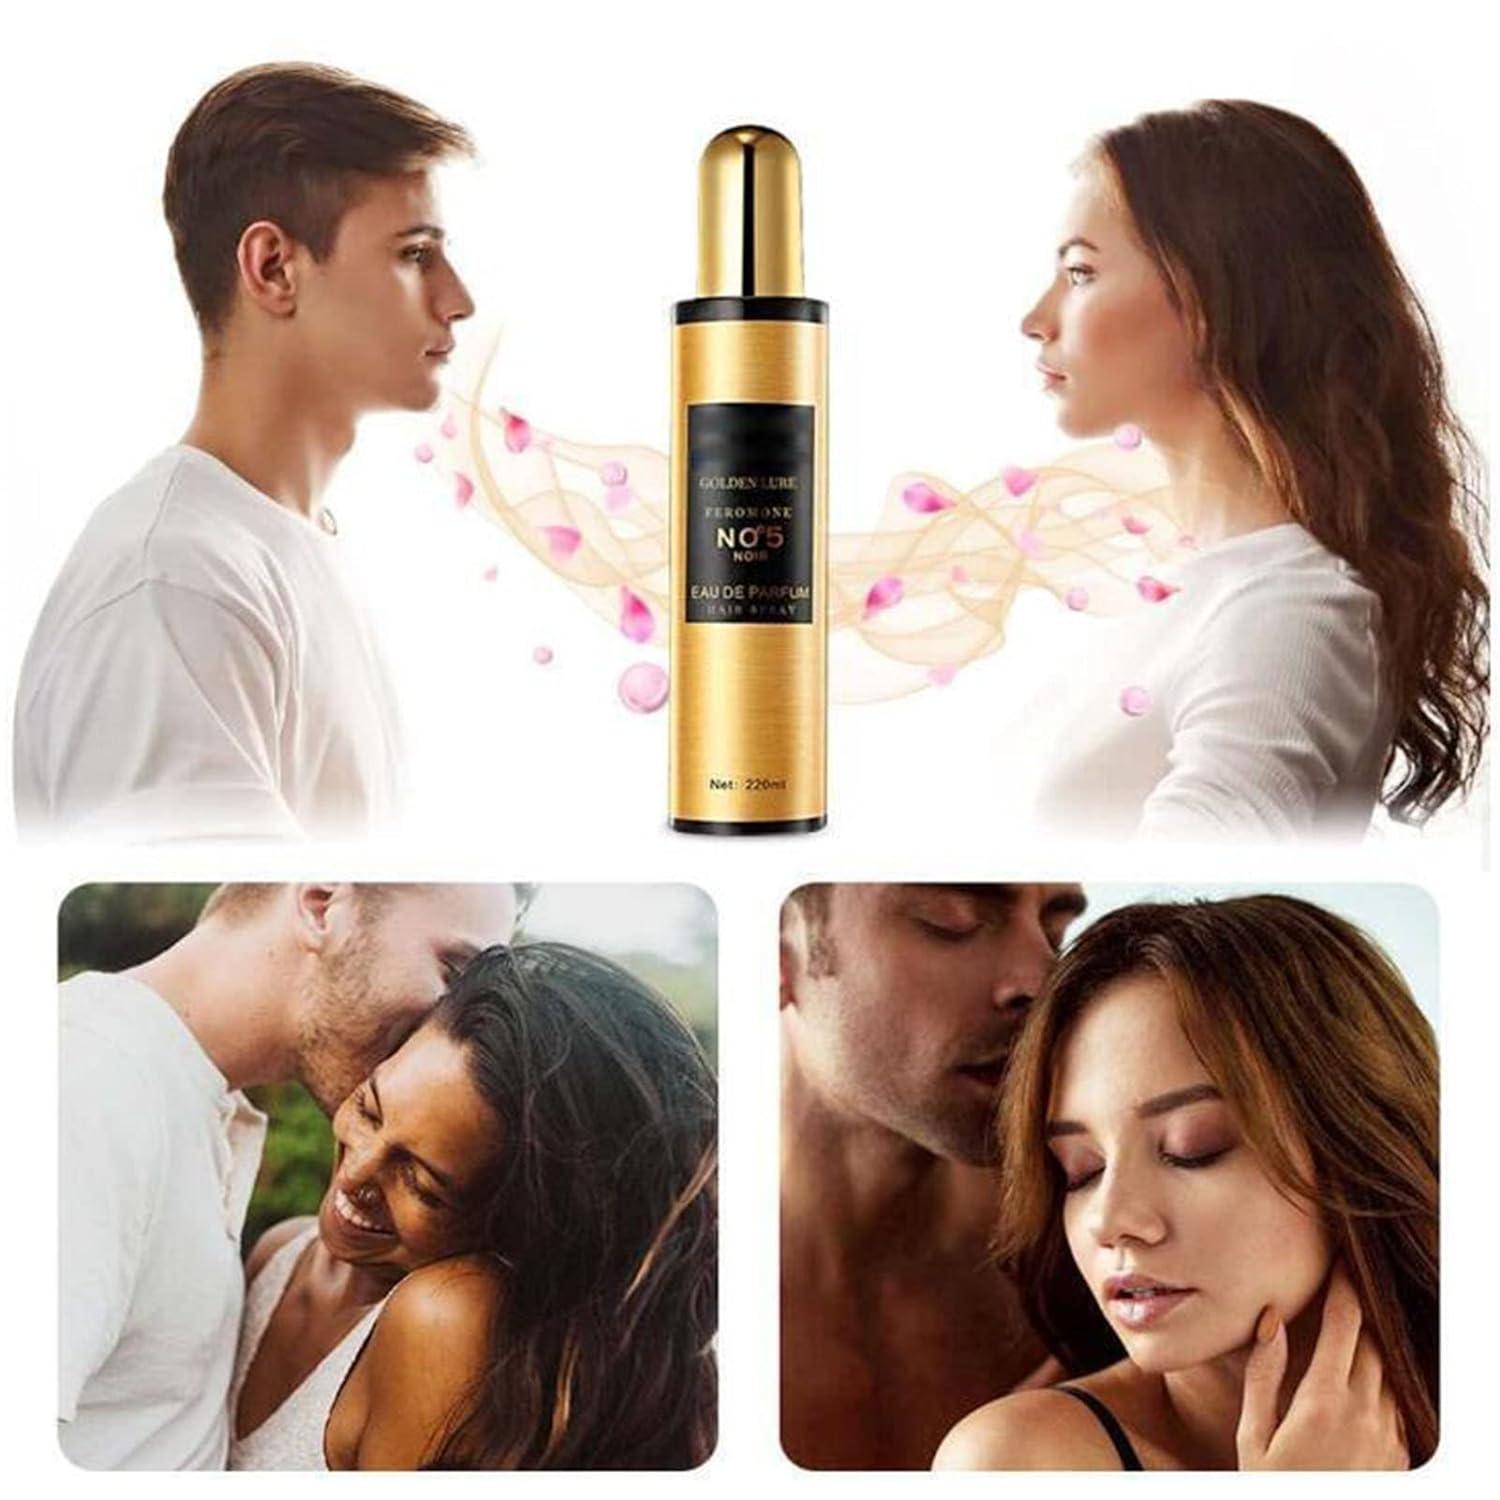 Golden Lure Pheromone Hair Oil, Long Lasting Golden Lure Pheromone